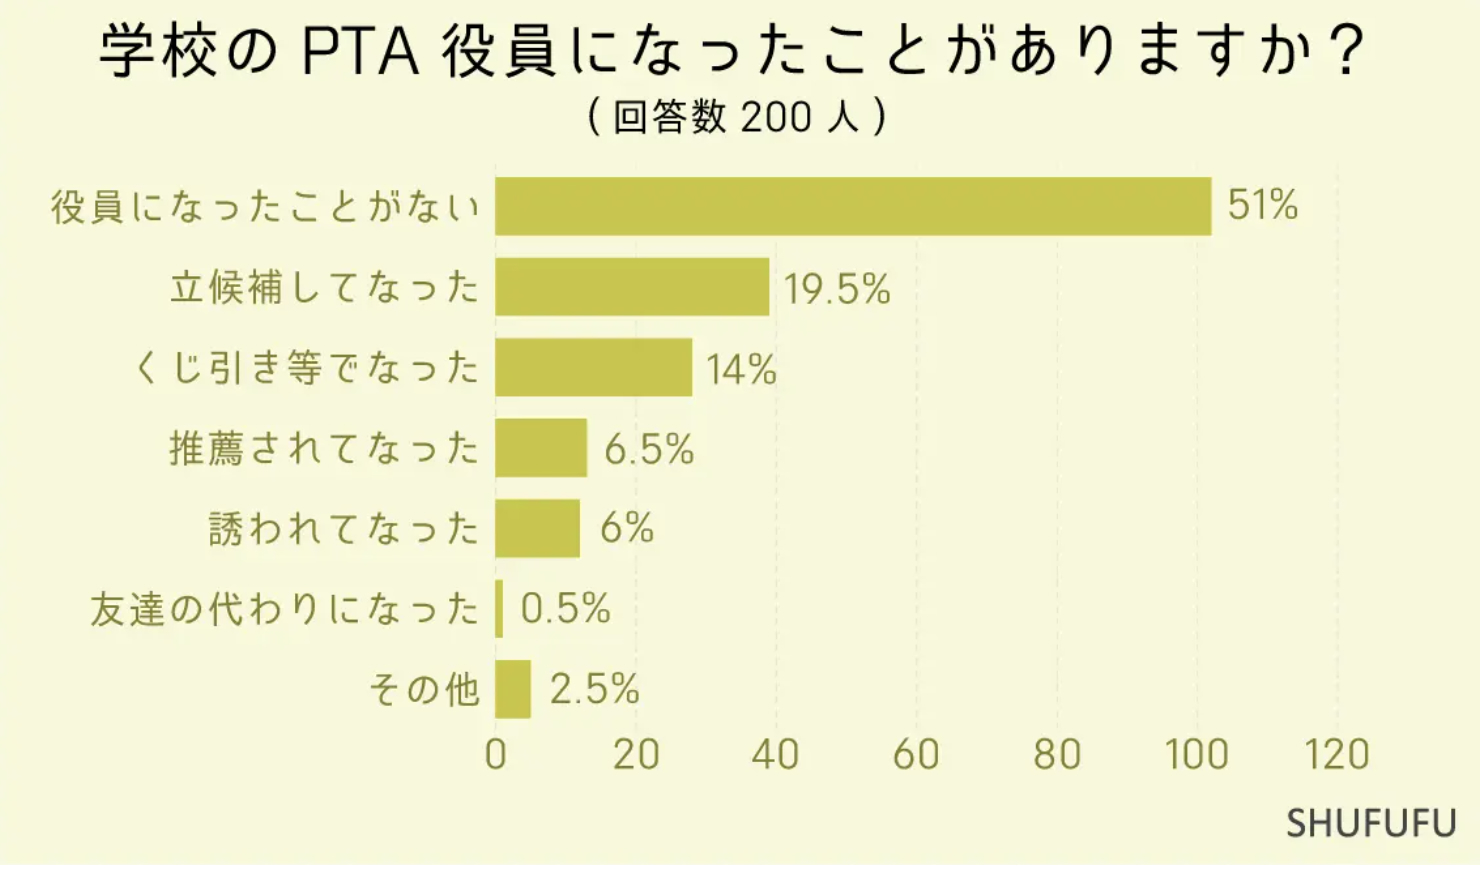 画像はアンケート結果を示す棒グラフで、学校のPTA役員になったことがあるか調査した内容。回答者200人中、最も多いのは「役員になったことがない」51％。